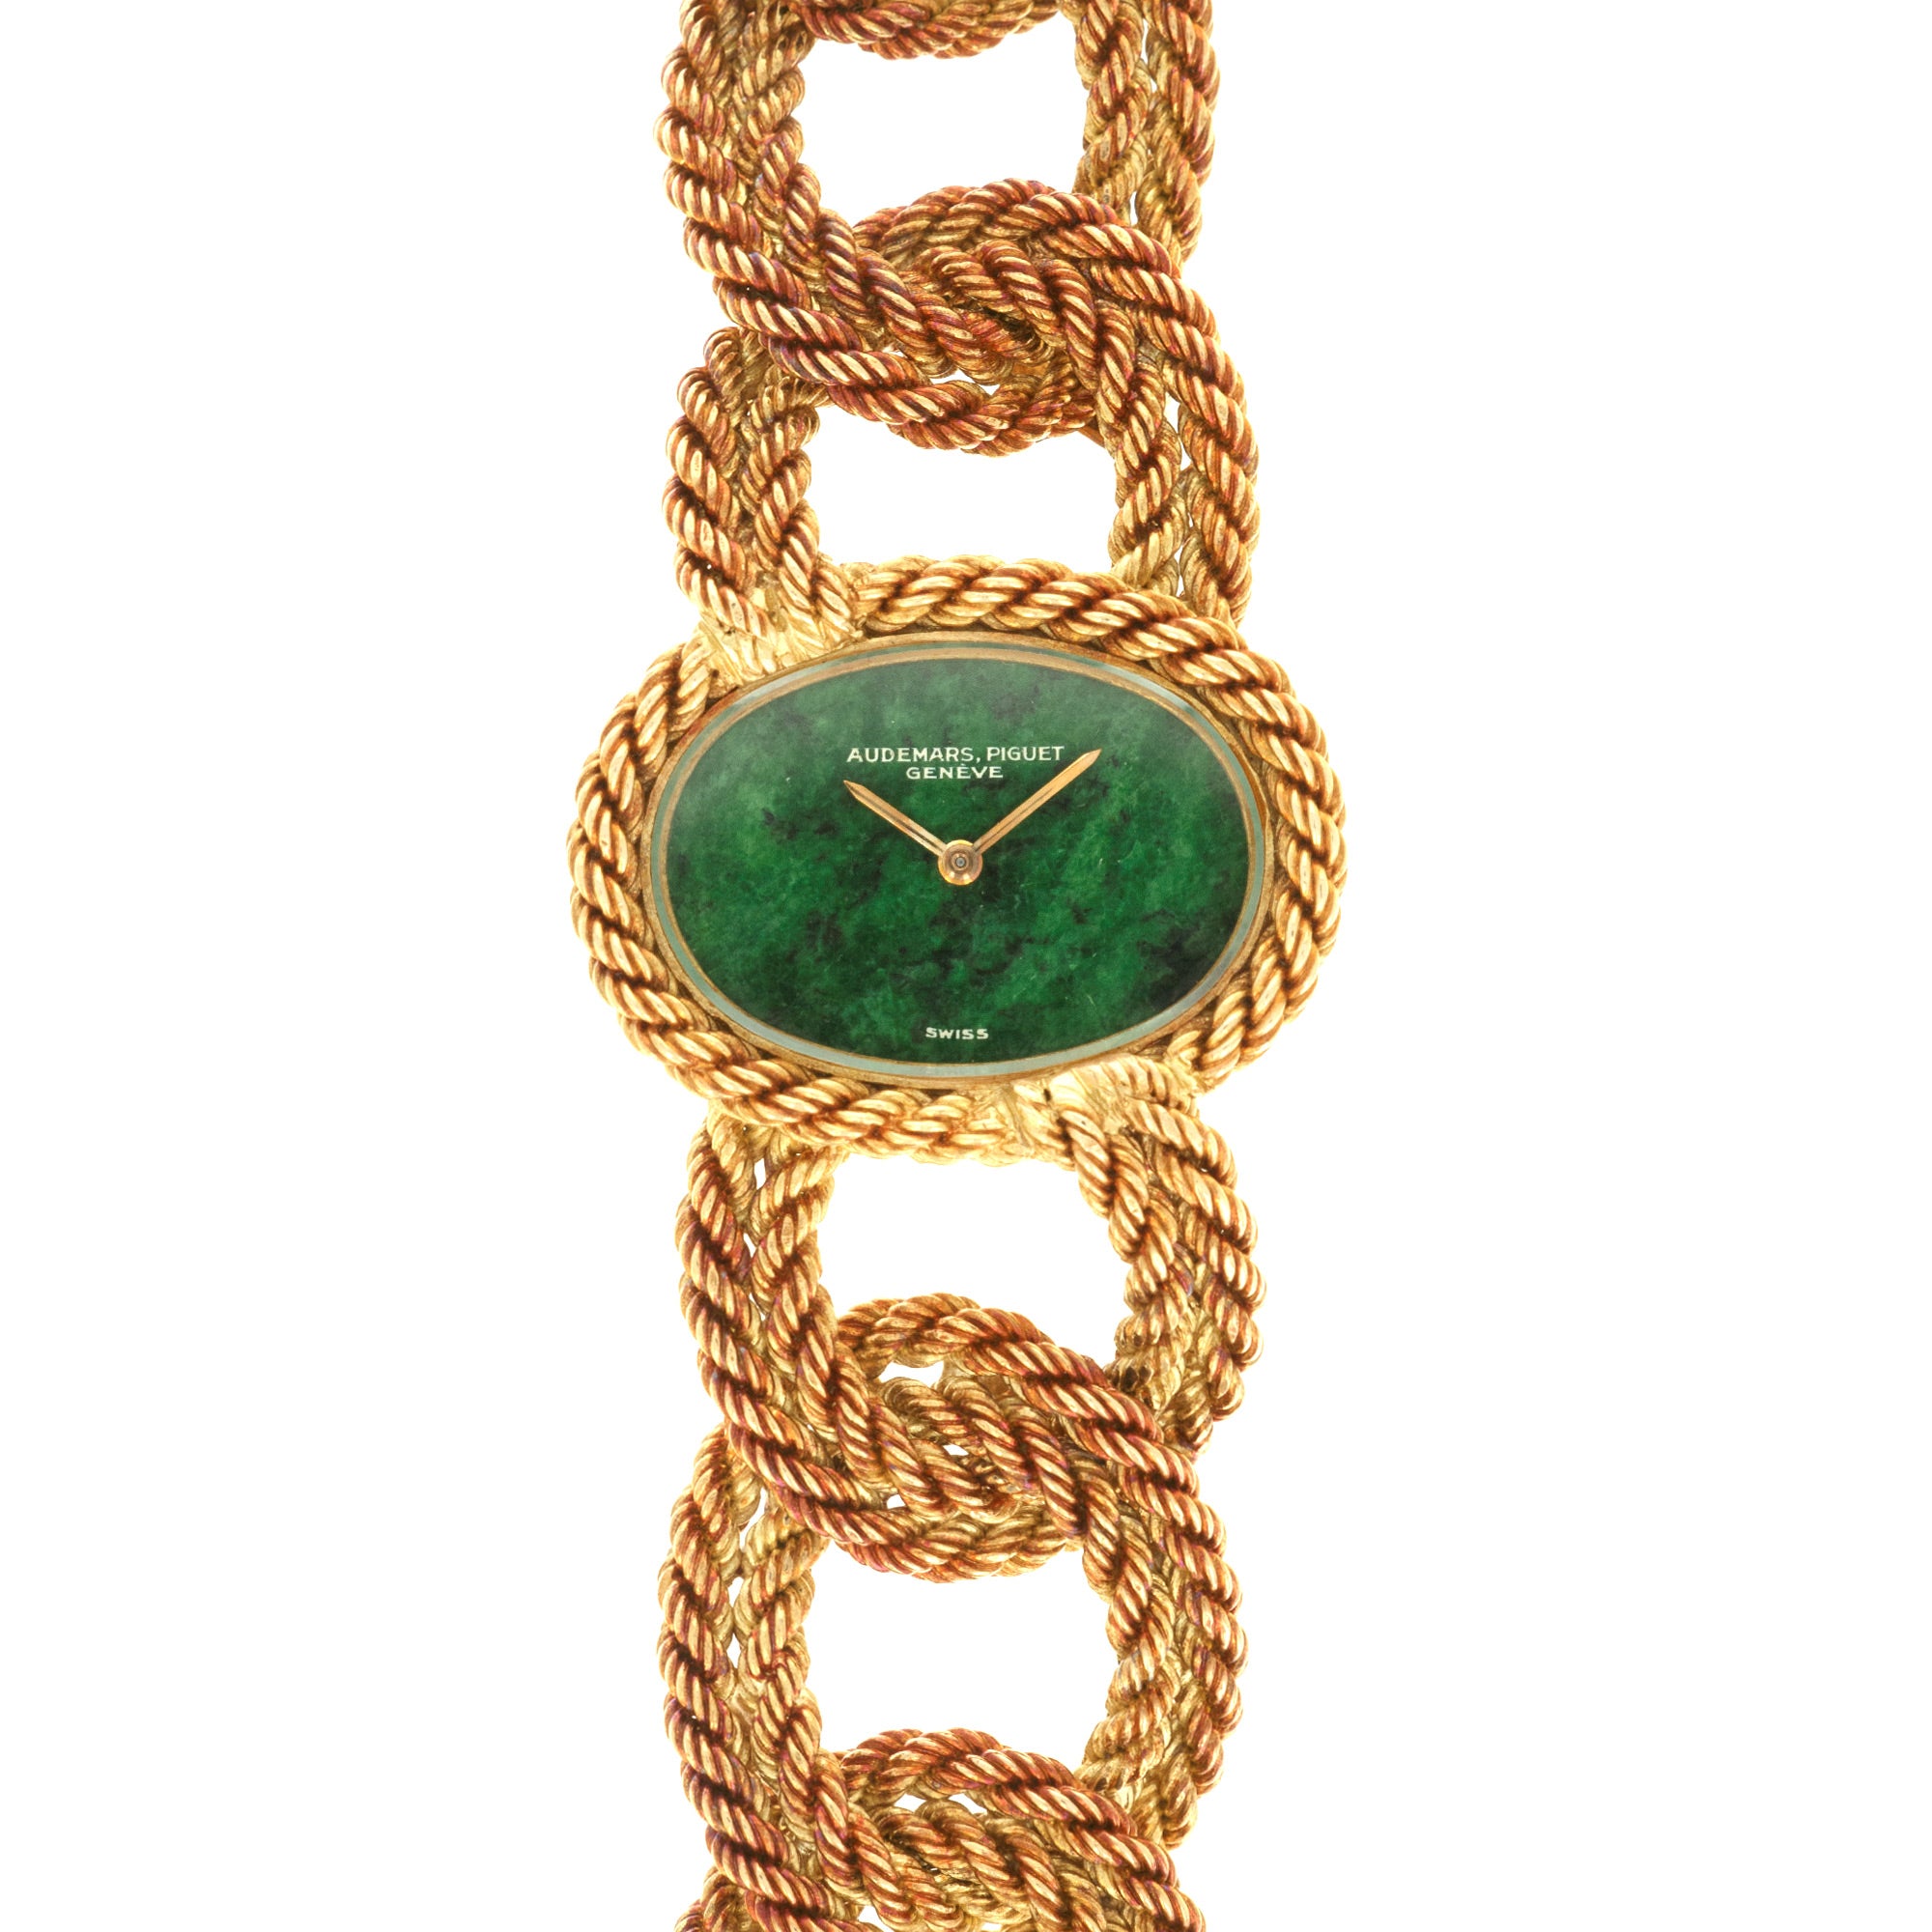 Audemars Piguet - Audemars Piguet Yellow Gold Braided Bracelet Watch, 1960s - The Keystone Watches